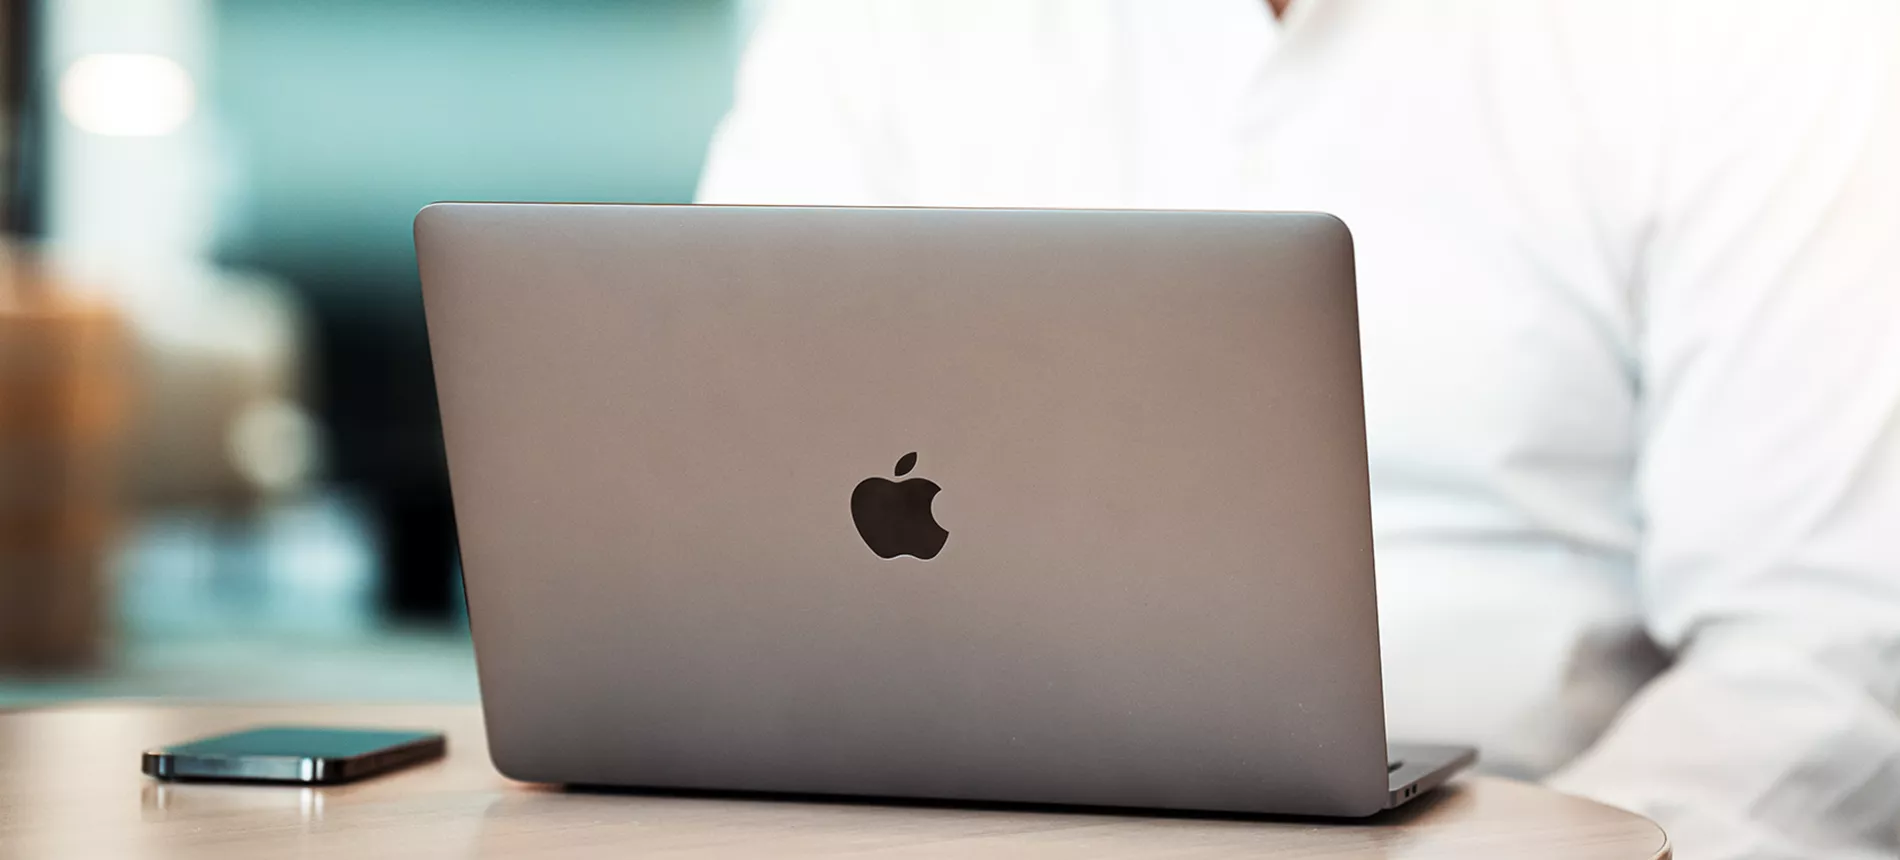 En Macbook och iPhone liggandes på ett bord